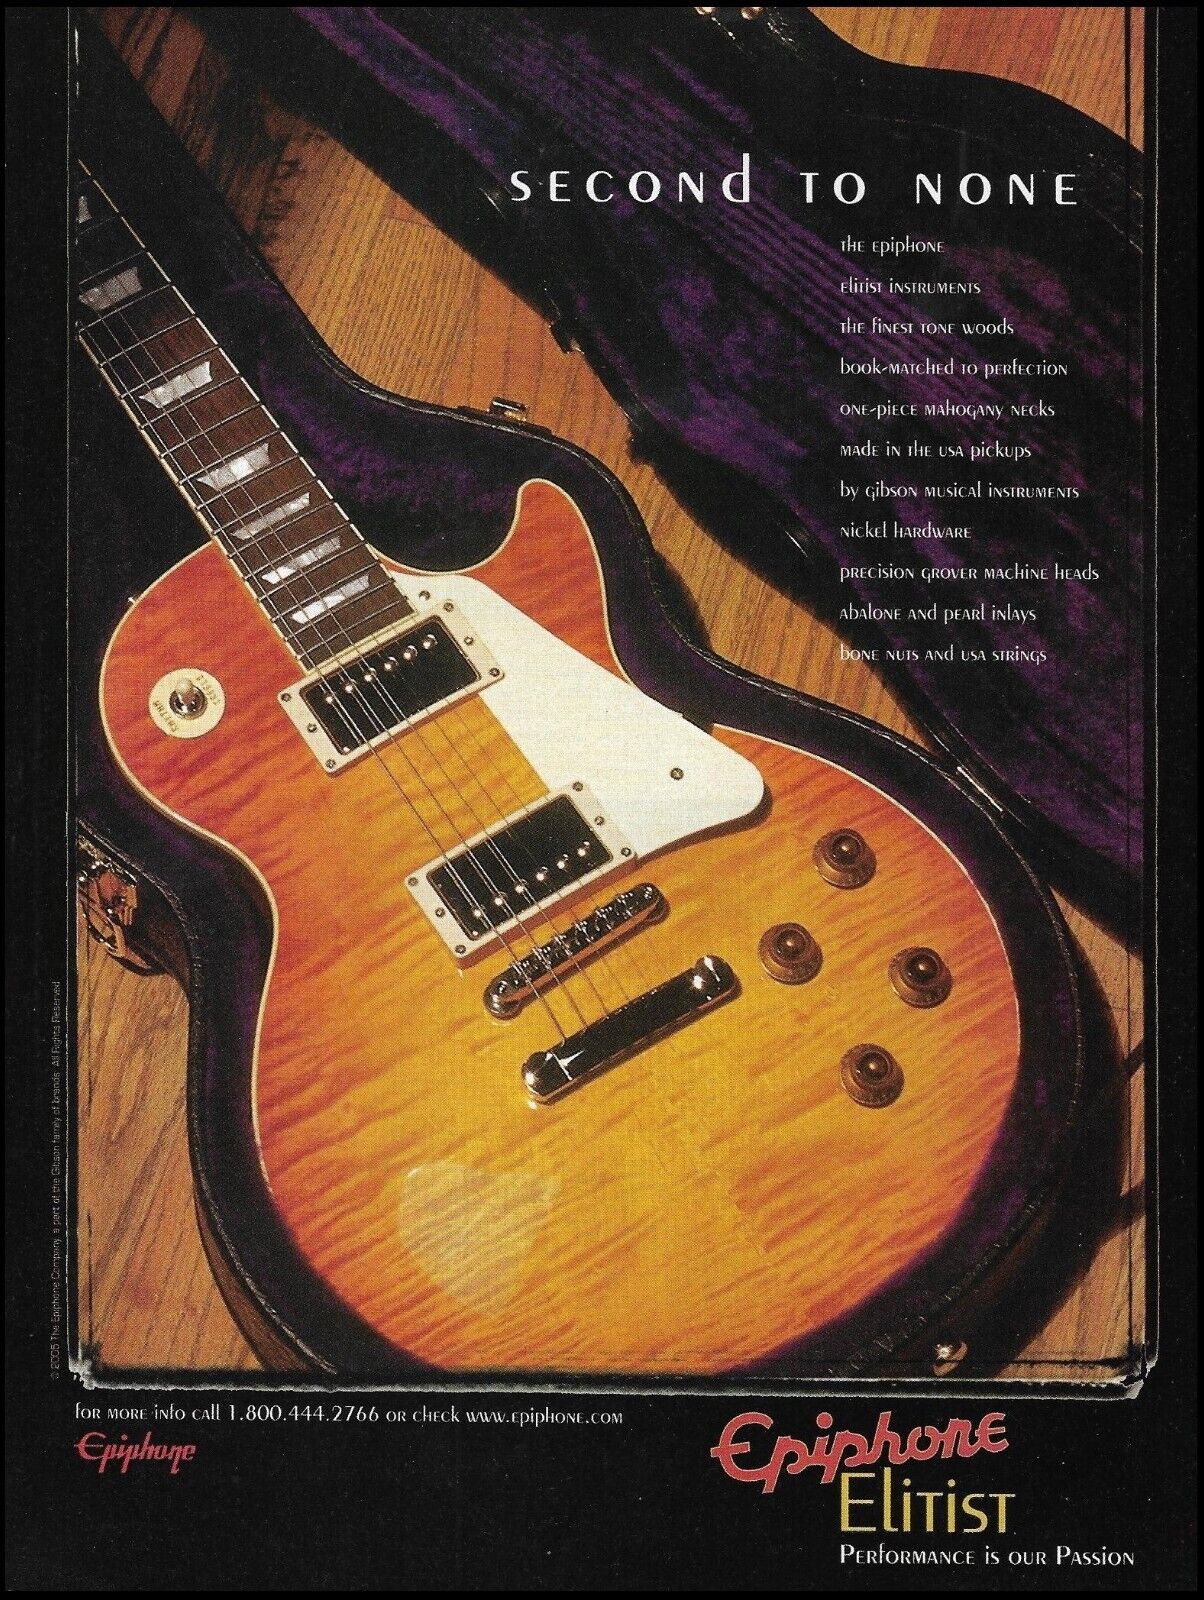 Epiphone Elitist Series Les Paul Standard Plus guitar ad 2005 advertisement 1A